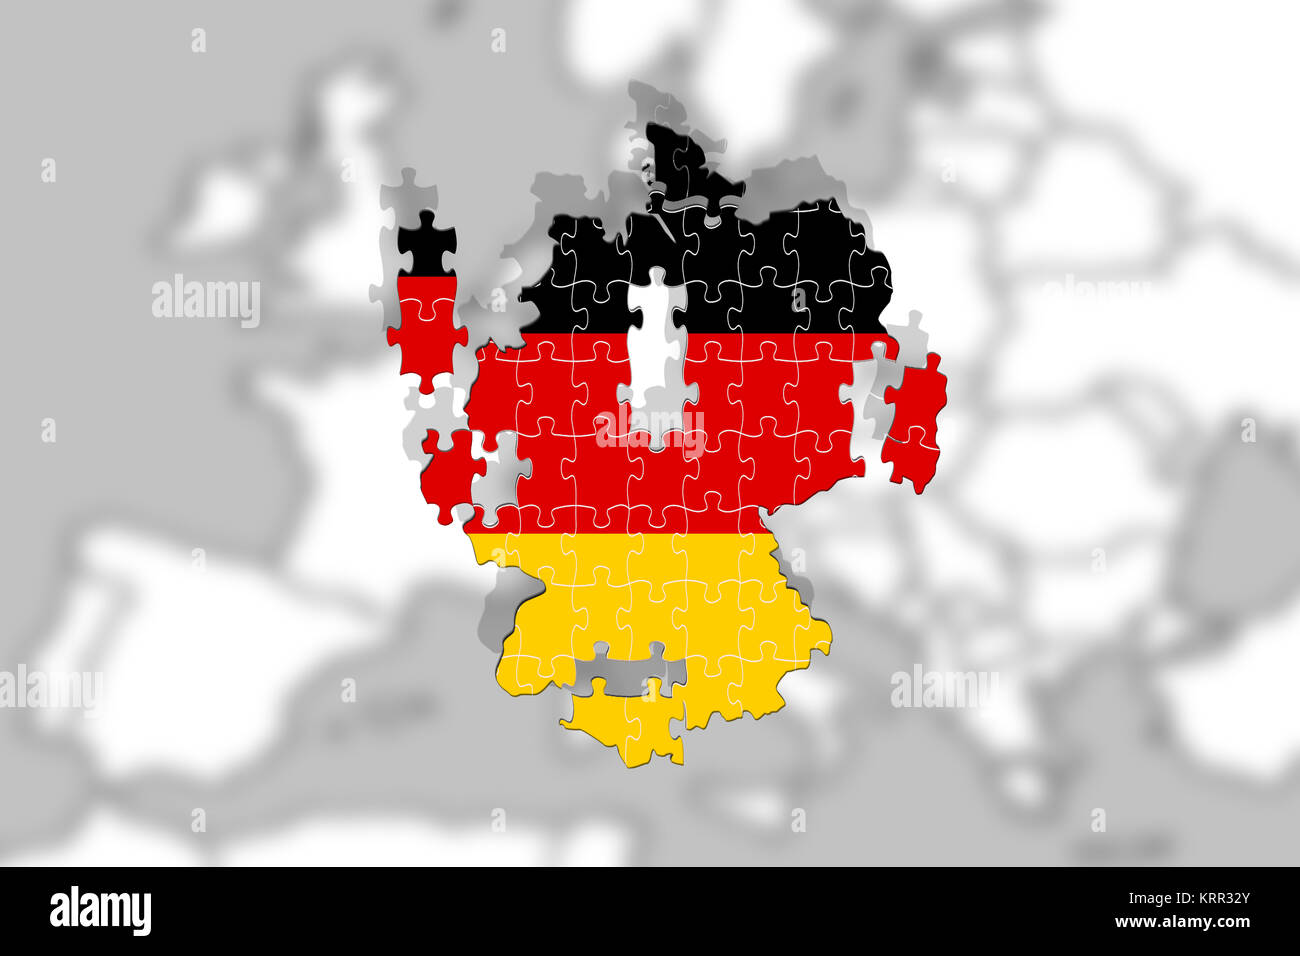 Deutschland zerfallen in Europa, Puzzle mit Nationalflagge Stockfotografie  - Alamy